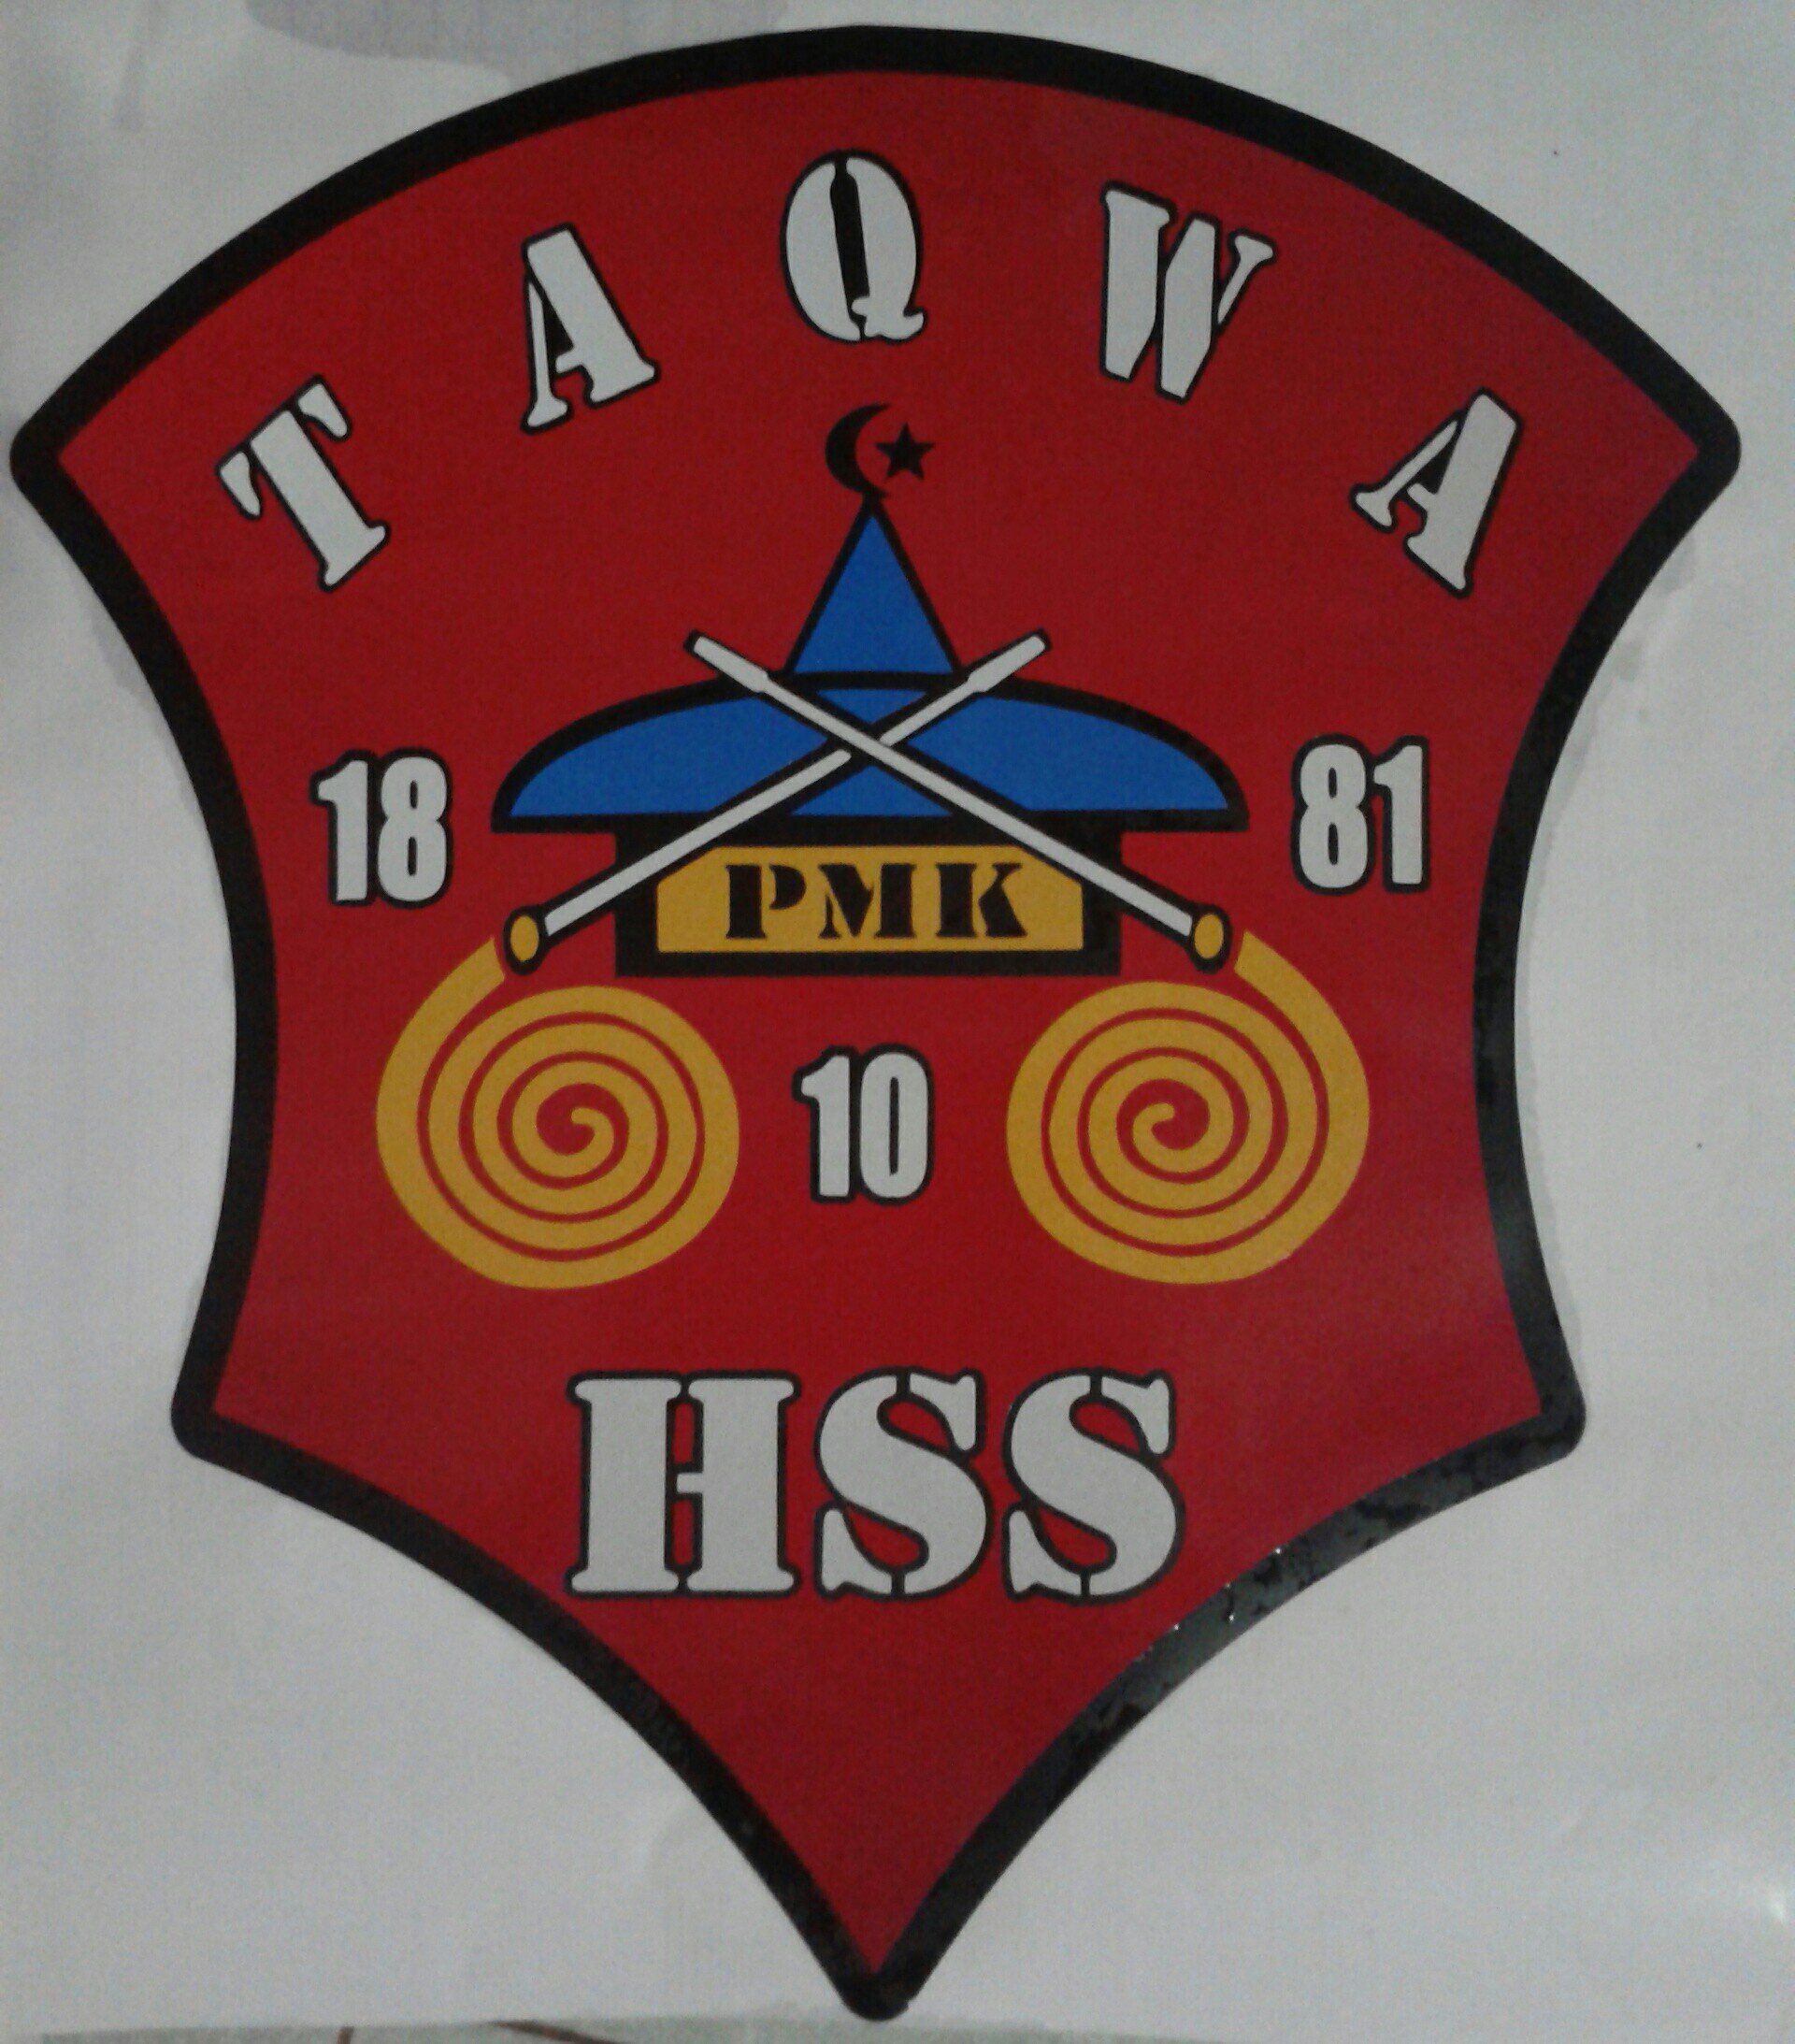 PMK TAQWA SINCE 18 oktober 1981 


frequensi emergecy 14.686-60 tlp 085248221220,085247379009